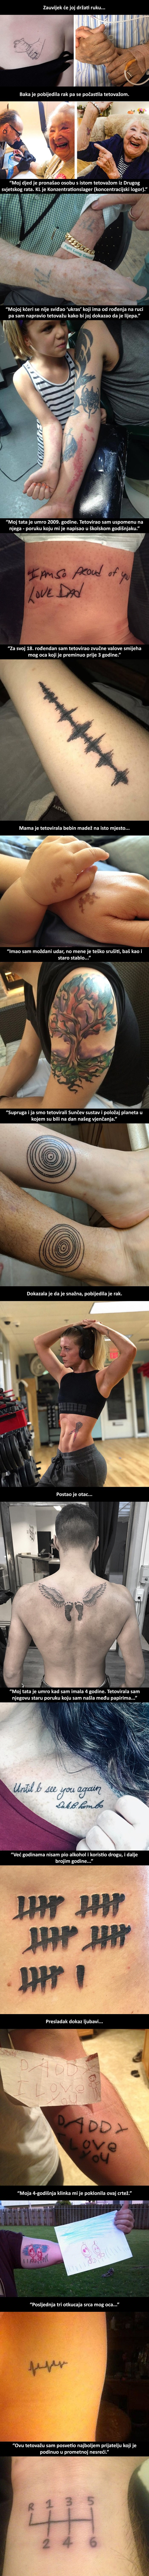 Tetovaže ne služe sam kao ukrasi, ove imaju dublja značenja koja malo koga ostavljaju ravnodušnima